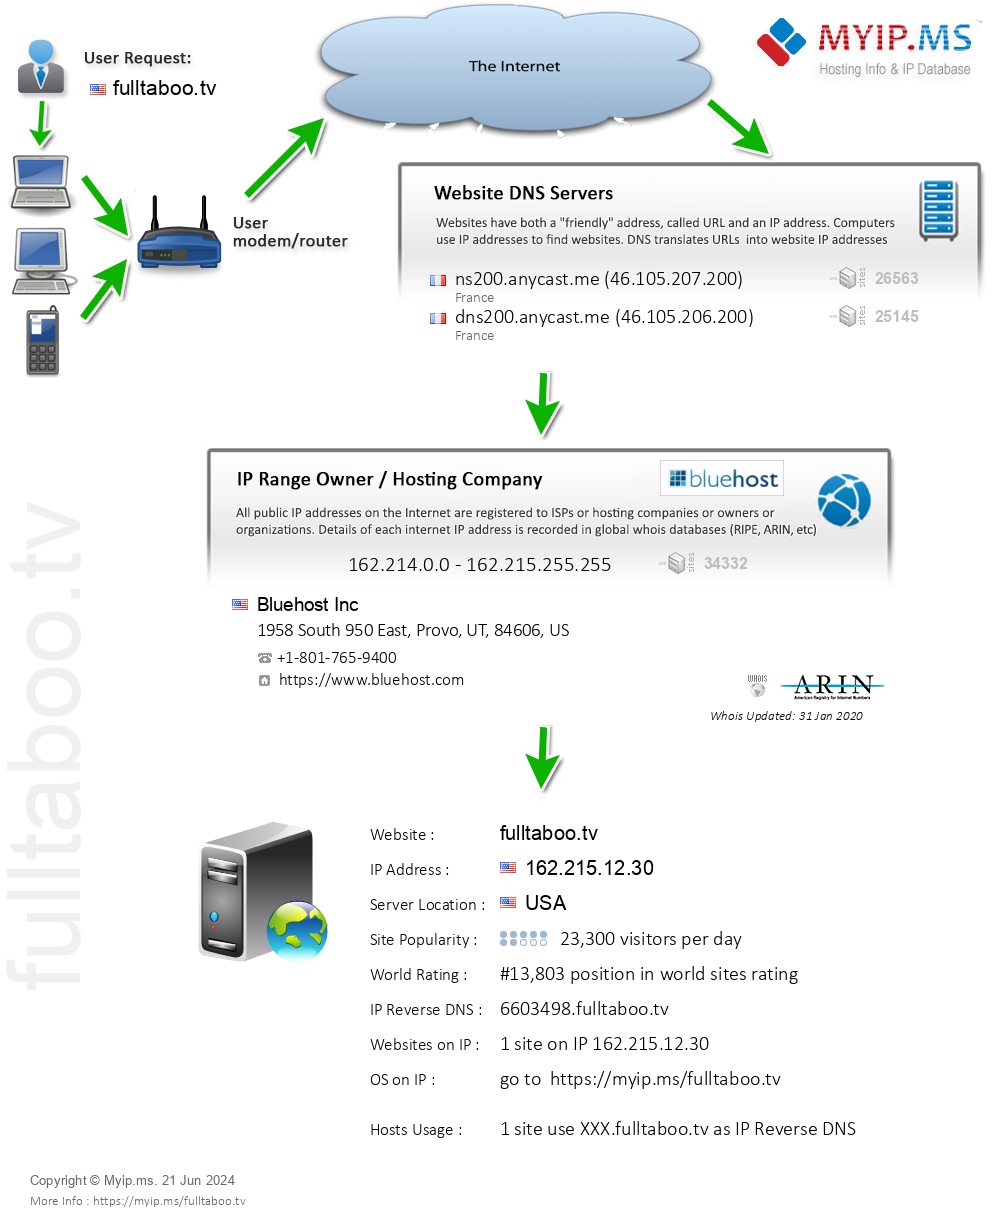 Fulltaboo.tv - Website Hosting Visual IP Diagram